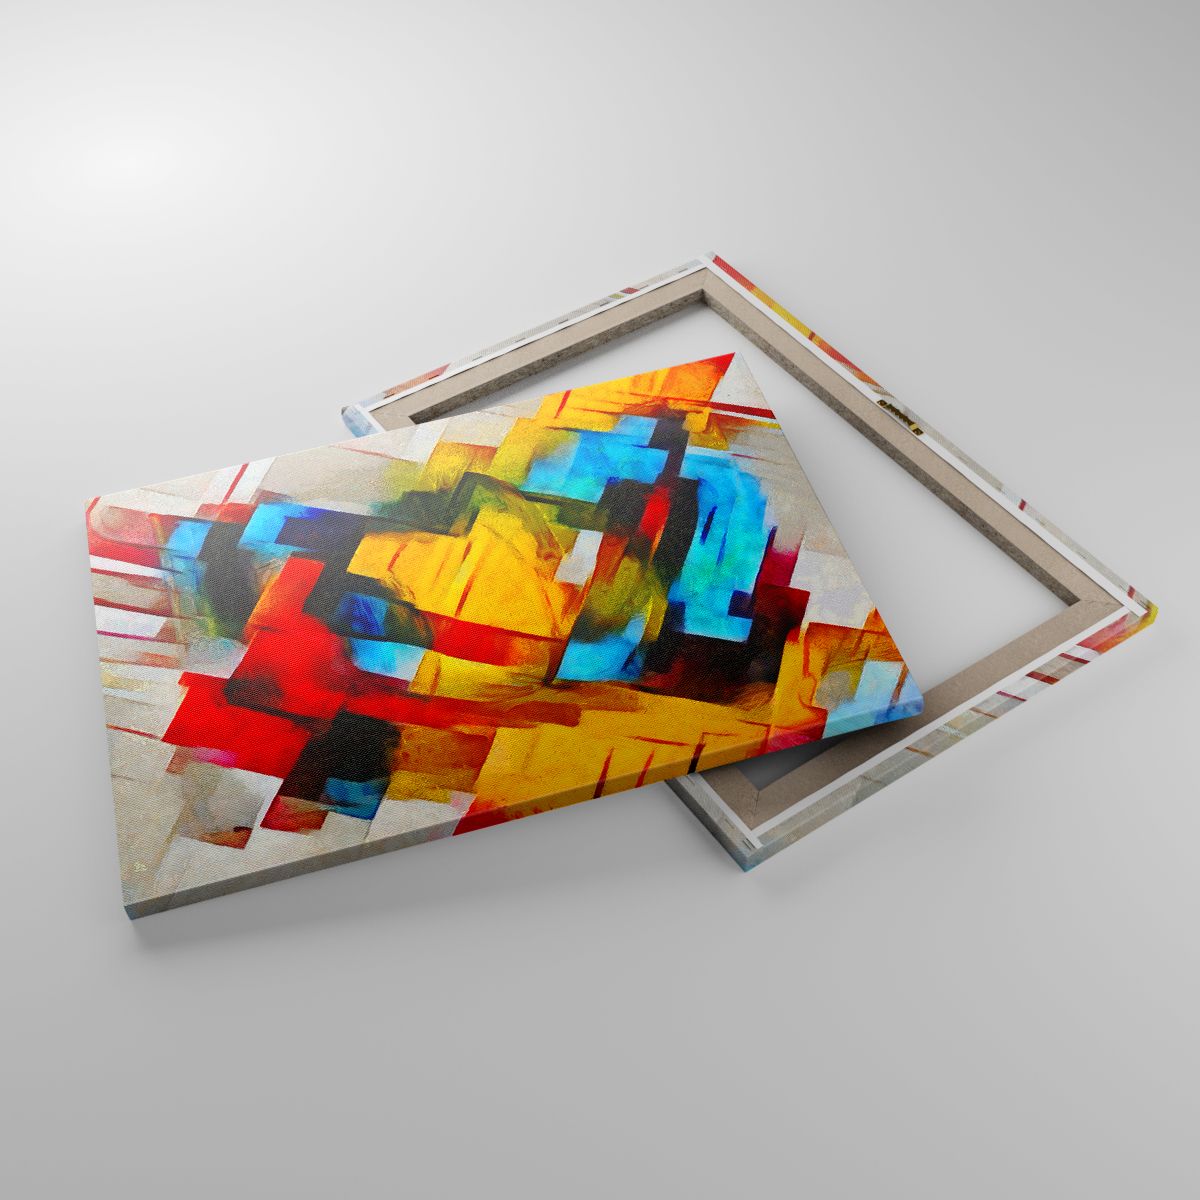 Cuadro Abstracción, Cuadro Cubismo, Cuadro Arte, Cuadro Expresionismo, Cuadro Multicolor